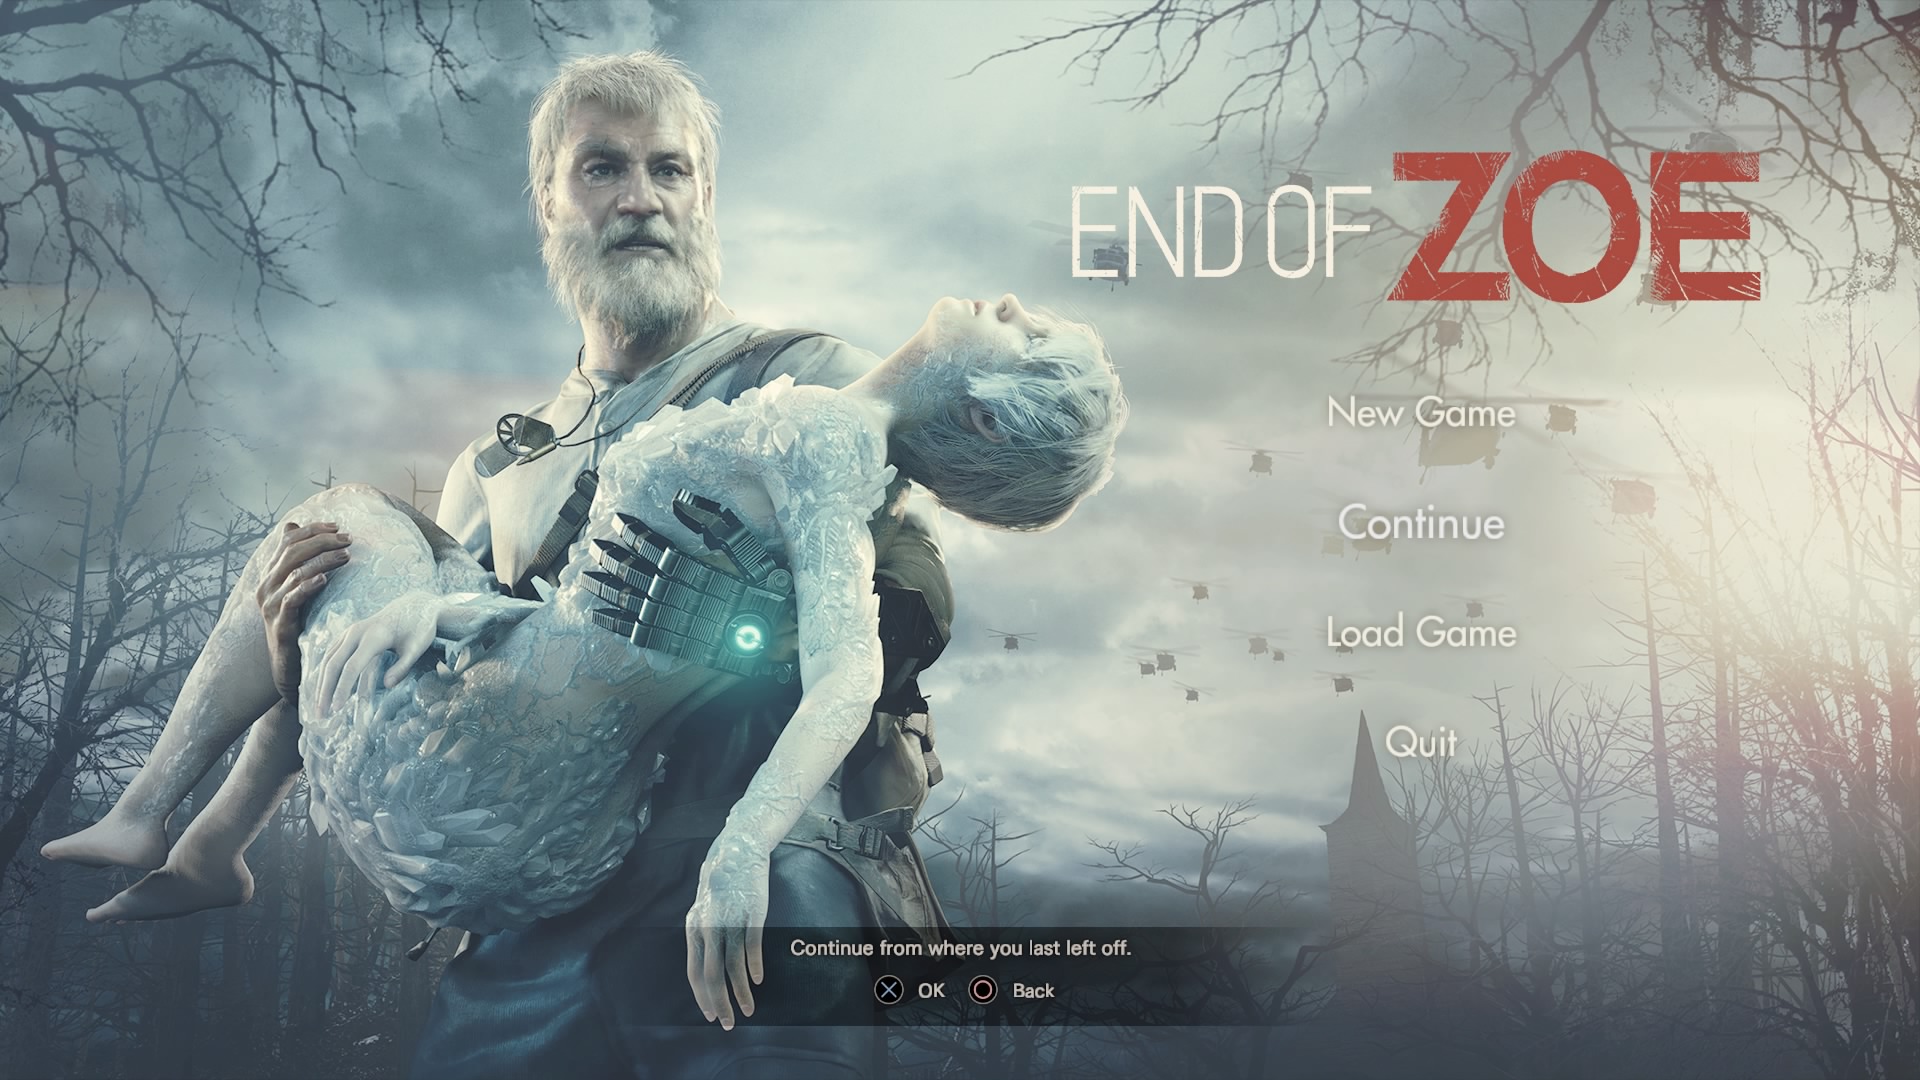 resident evil 7: end of zoe